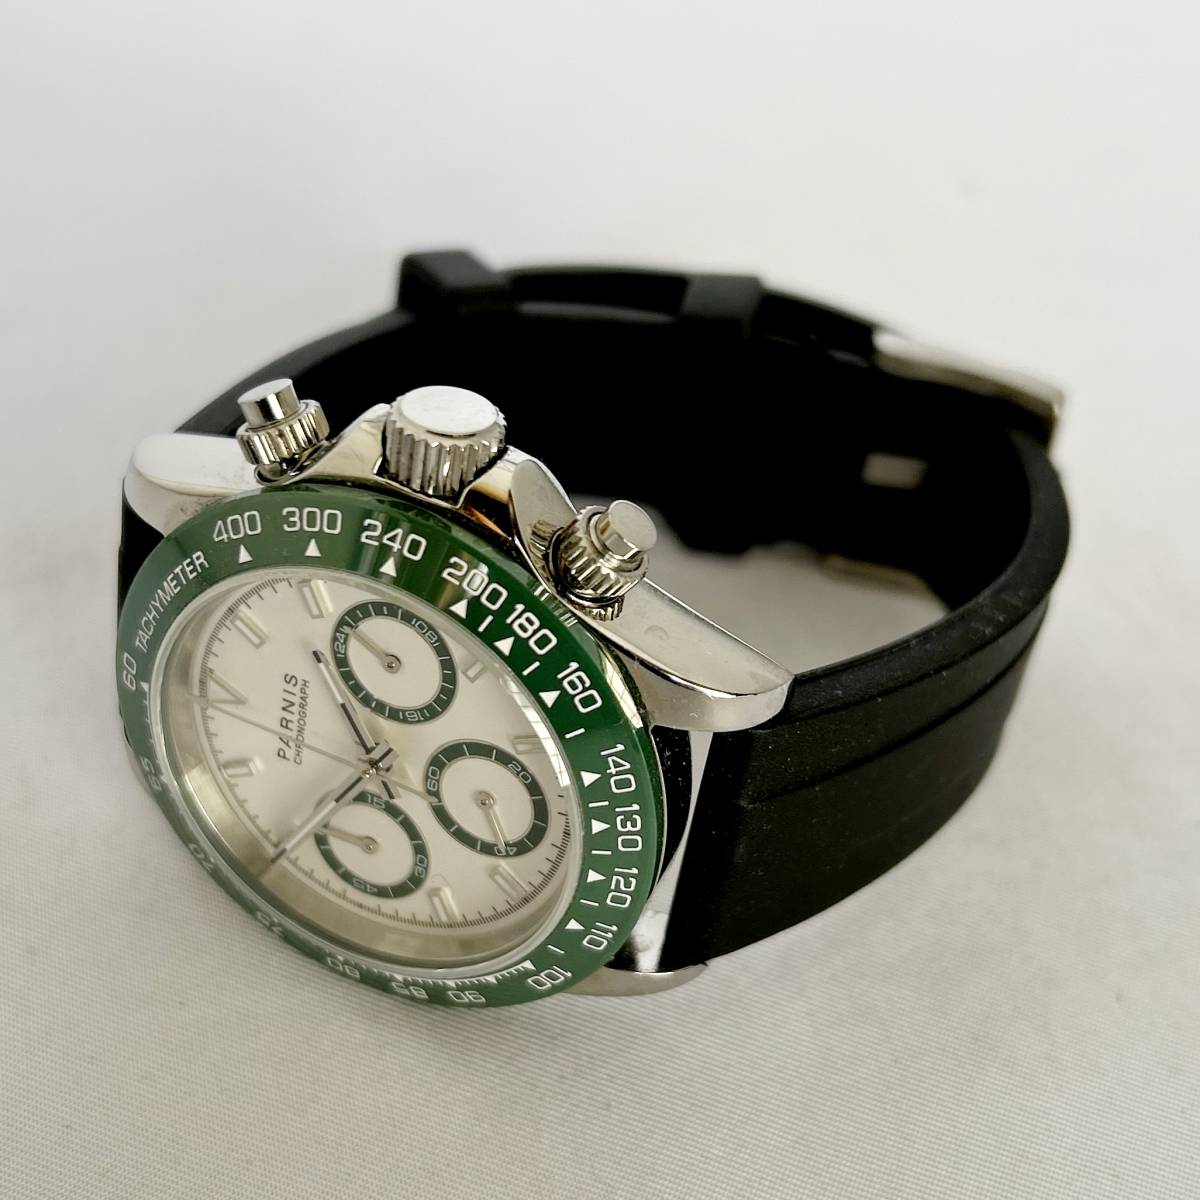 【デイトナオマージュ】PARNIS パーニス メンズ腕時計 38.5mm クォーツ式 クロノグラフ タキメーター 白文字盤 緑色ベゼル ラバーバンド - 5